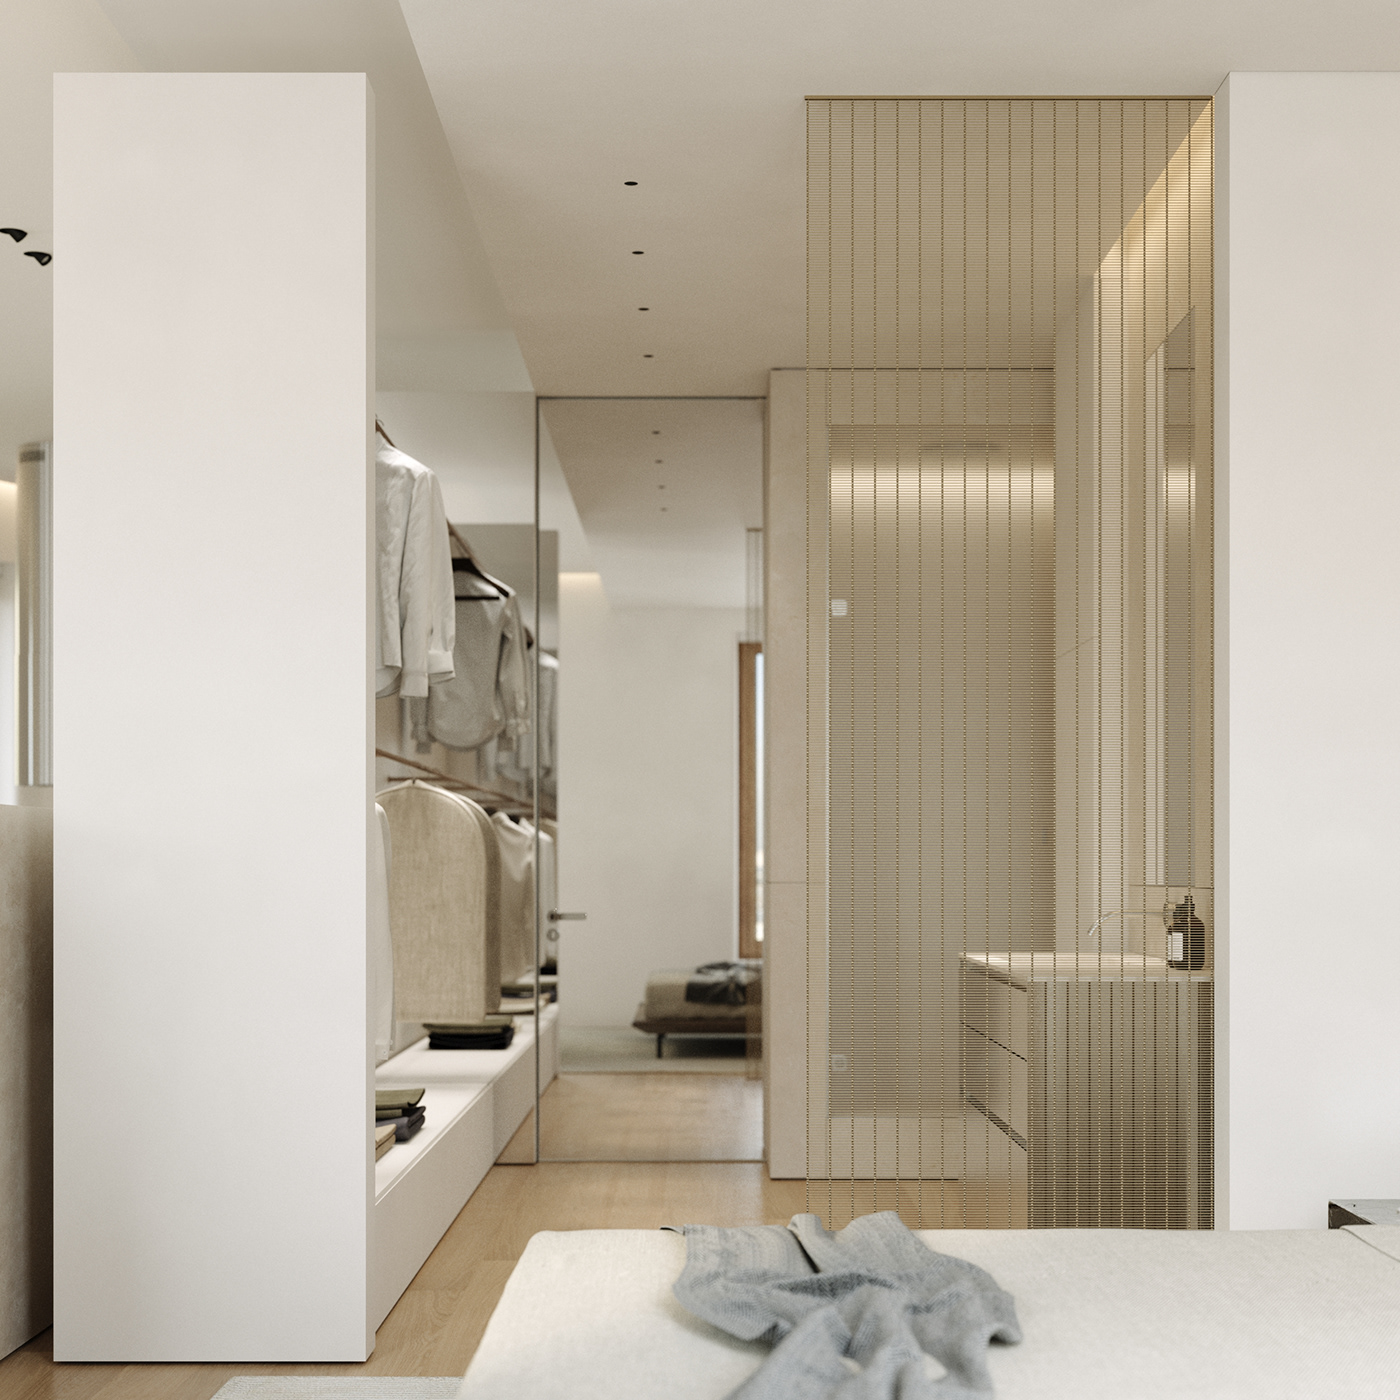 3D 3ds max Interior interior design  light interior Luxury Design minimal modern Render visualization